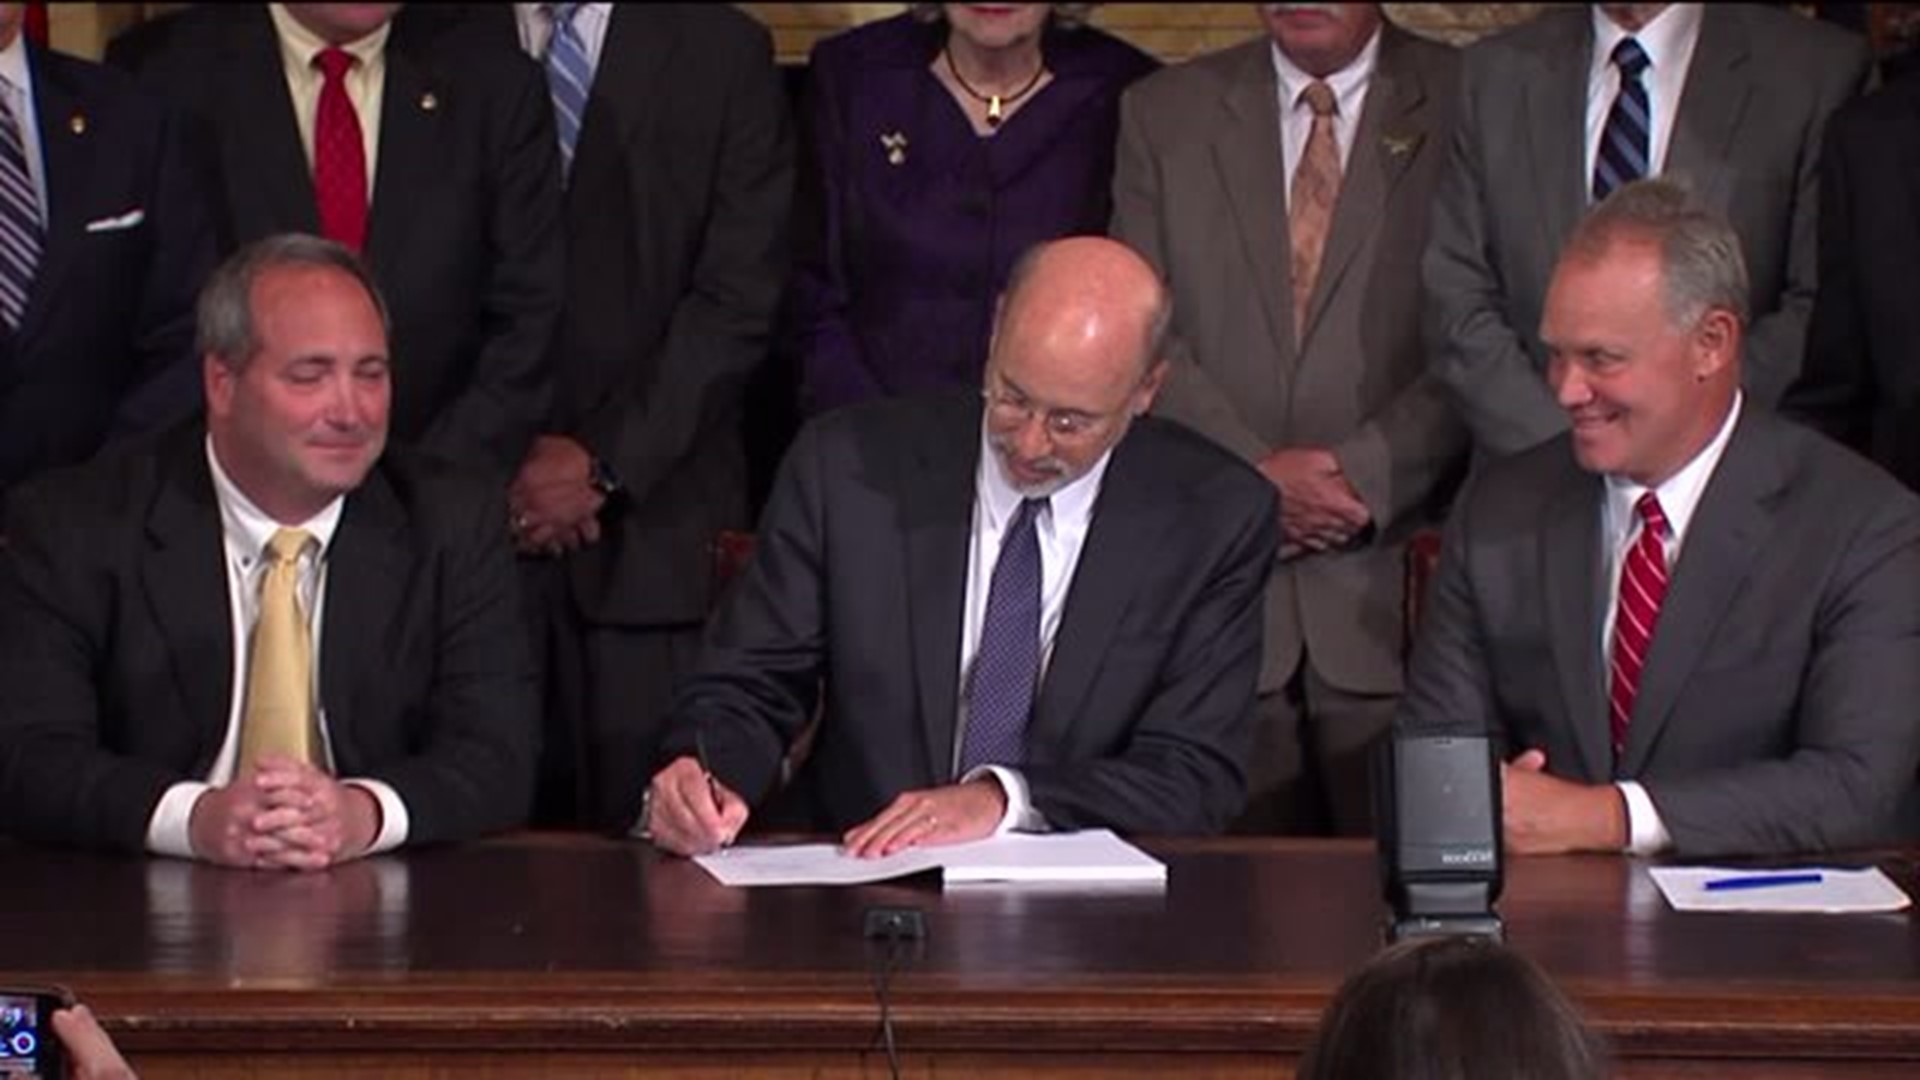 Gov. Wolf signs historic liquor reform bill